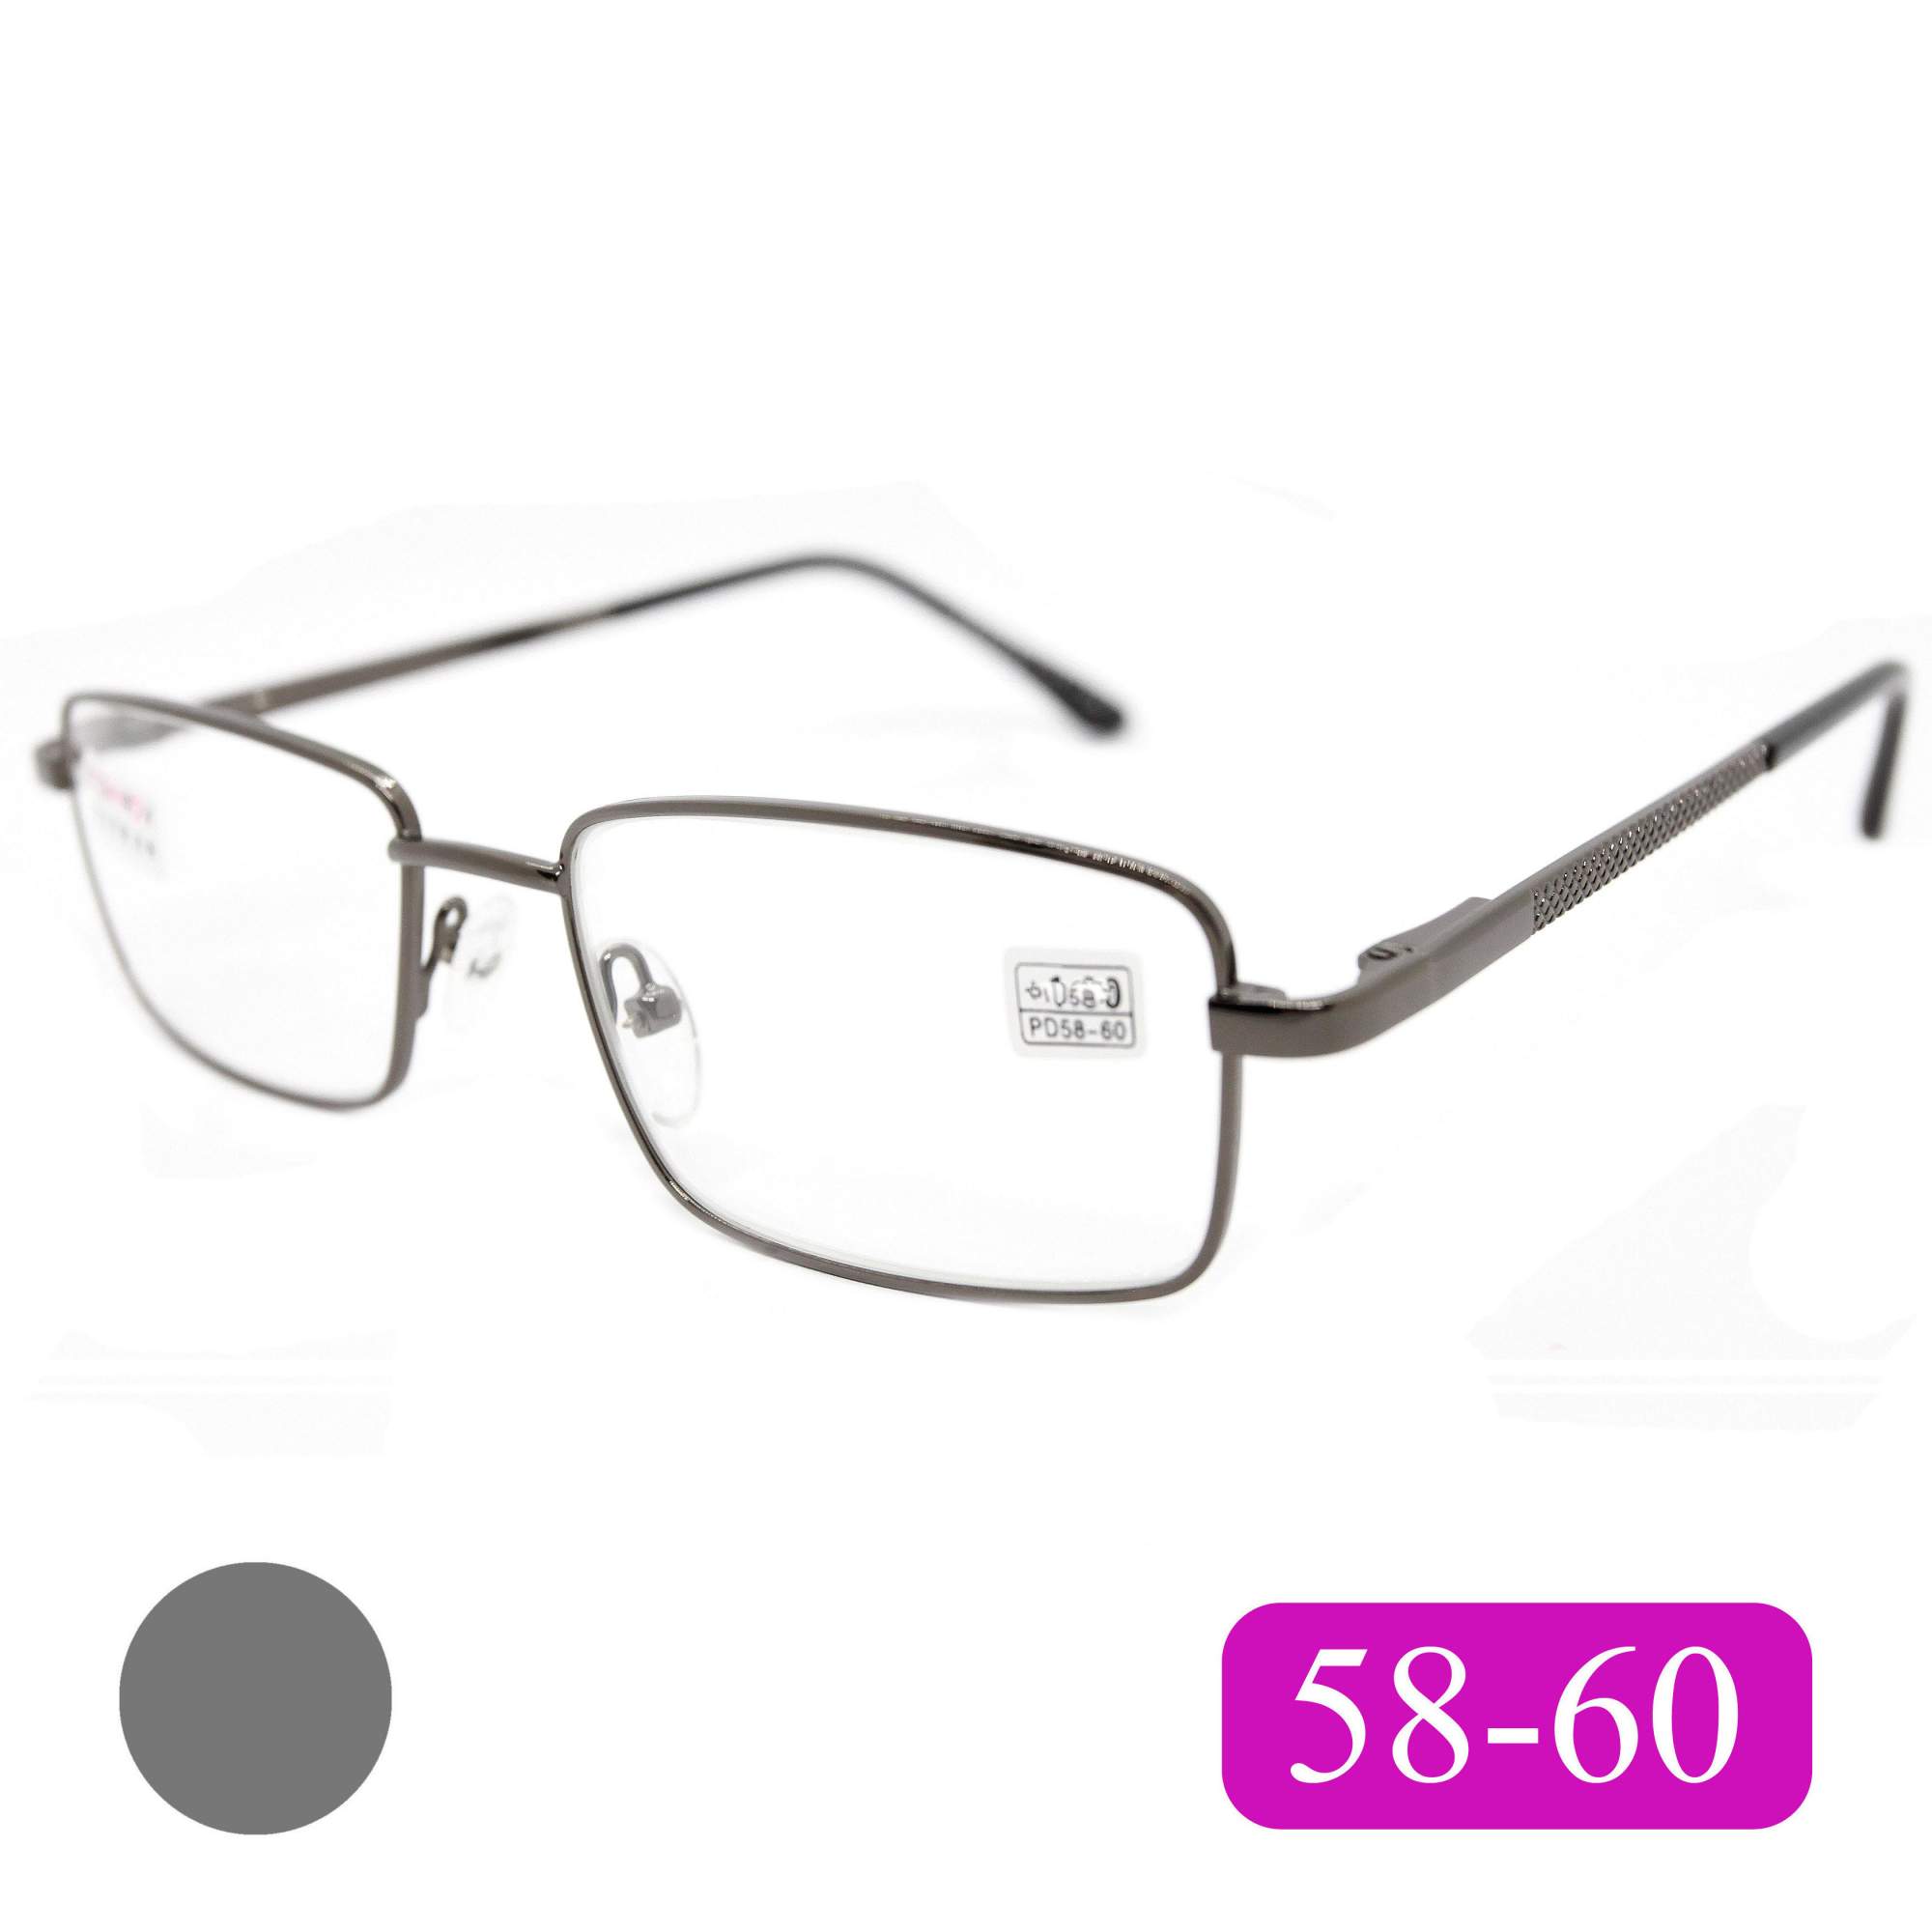 Готовые очки Fedrov 569, со стеклянной линзой, +1,50, без футляра, цвет серый, РЦ 58-60